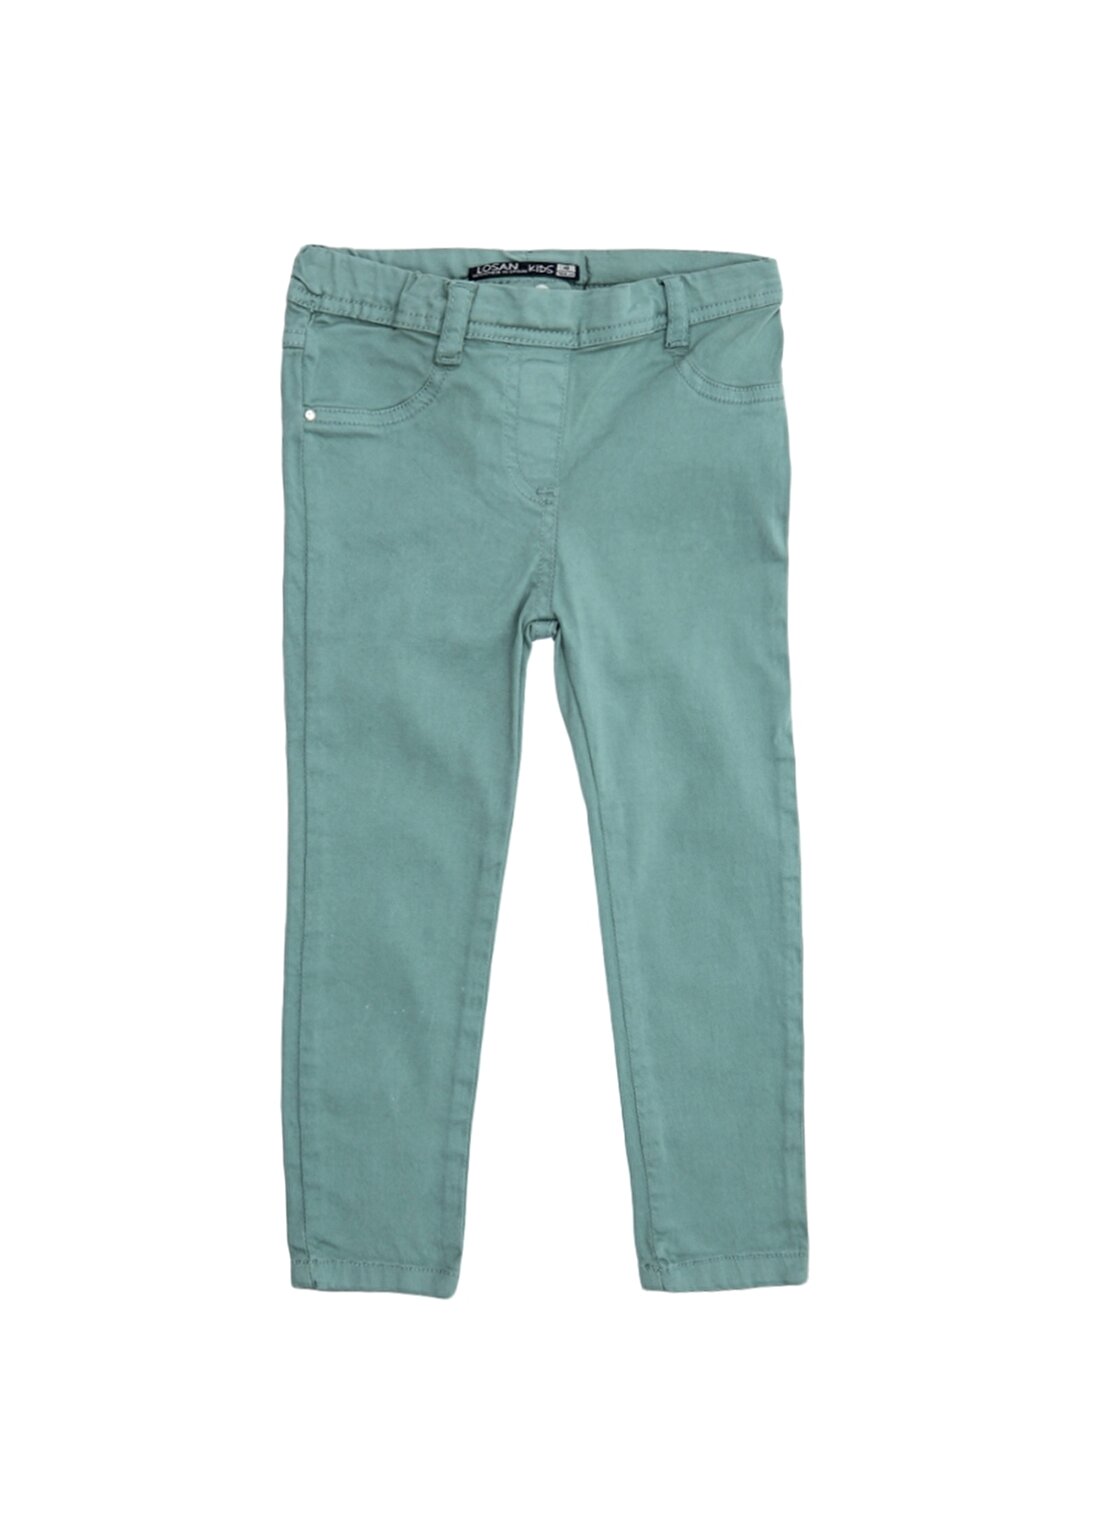 Losan Yeşil Kız Çocuk Pantolon